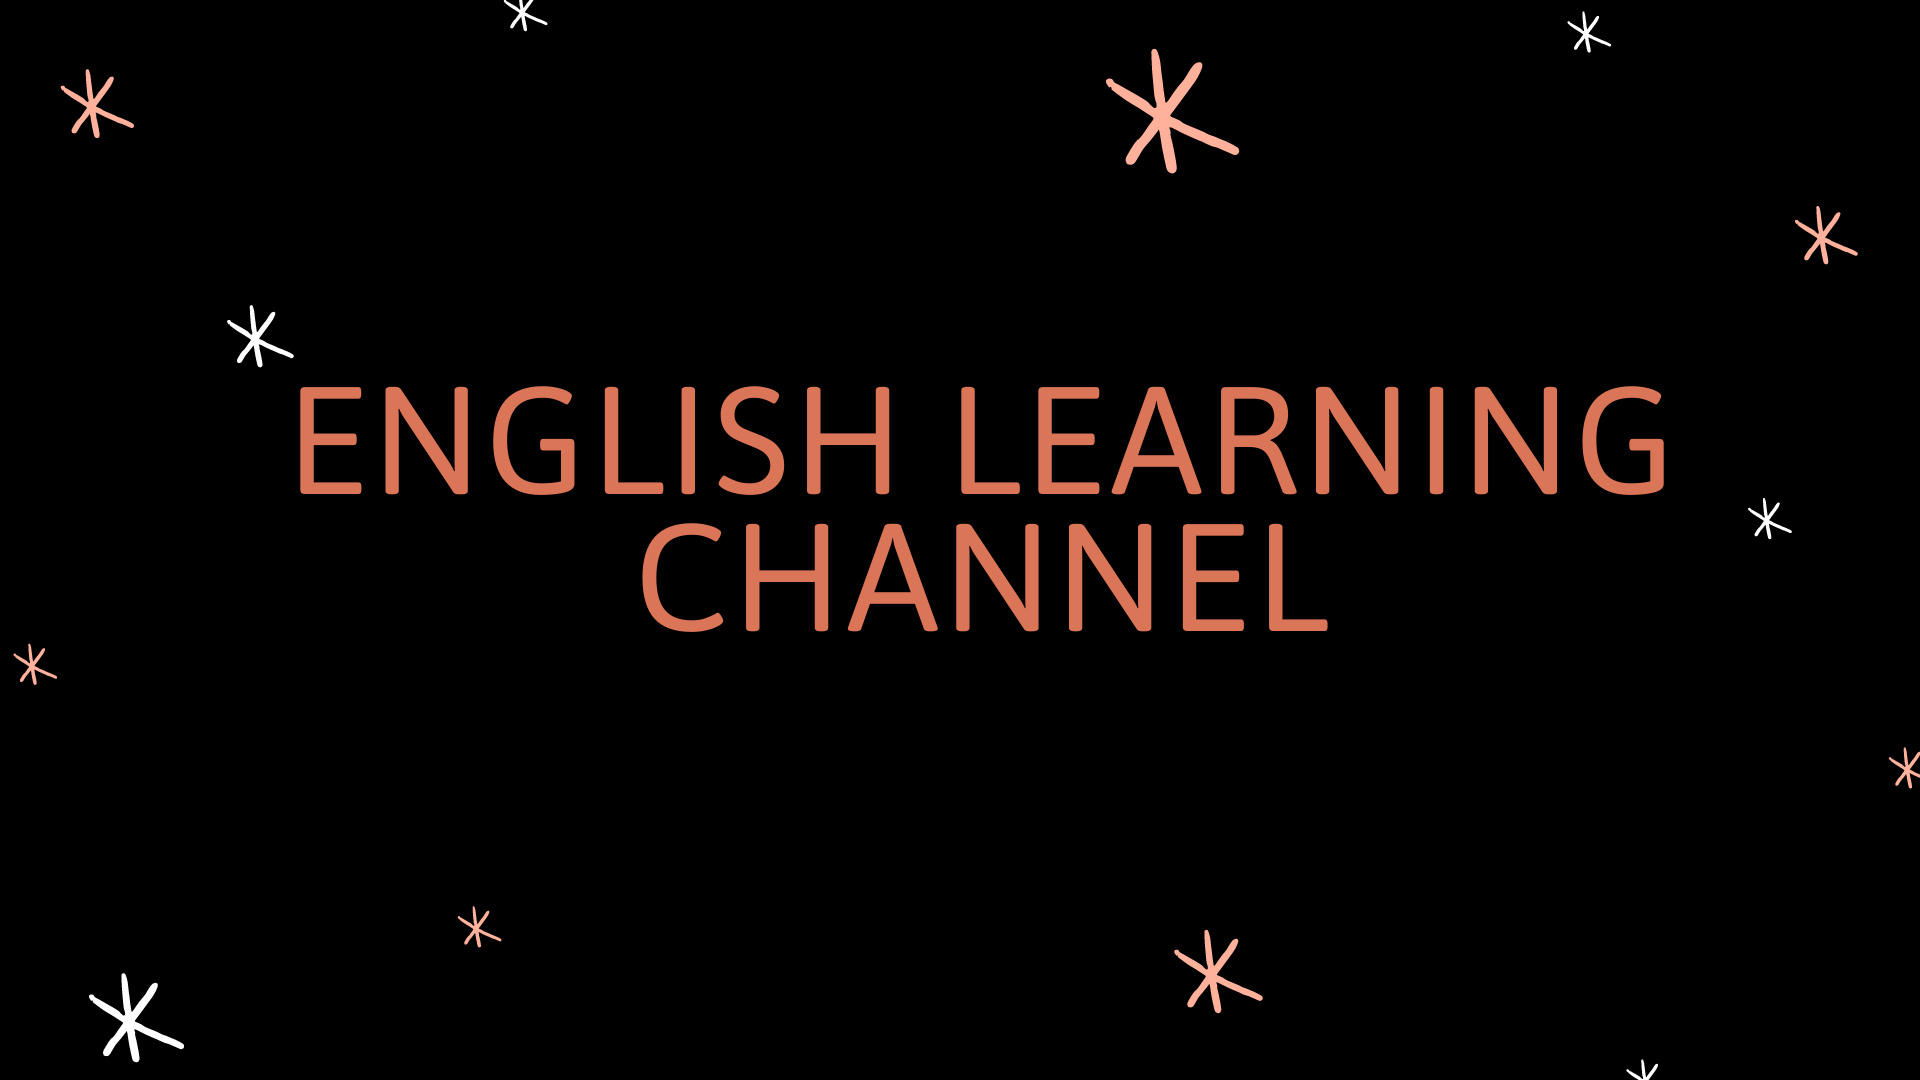 Các chương trình truyền hình giúp học tiếng Anh hiệu quả